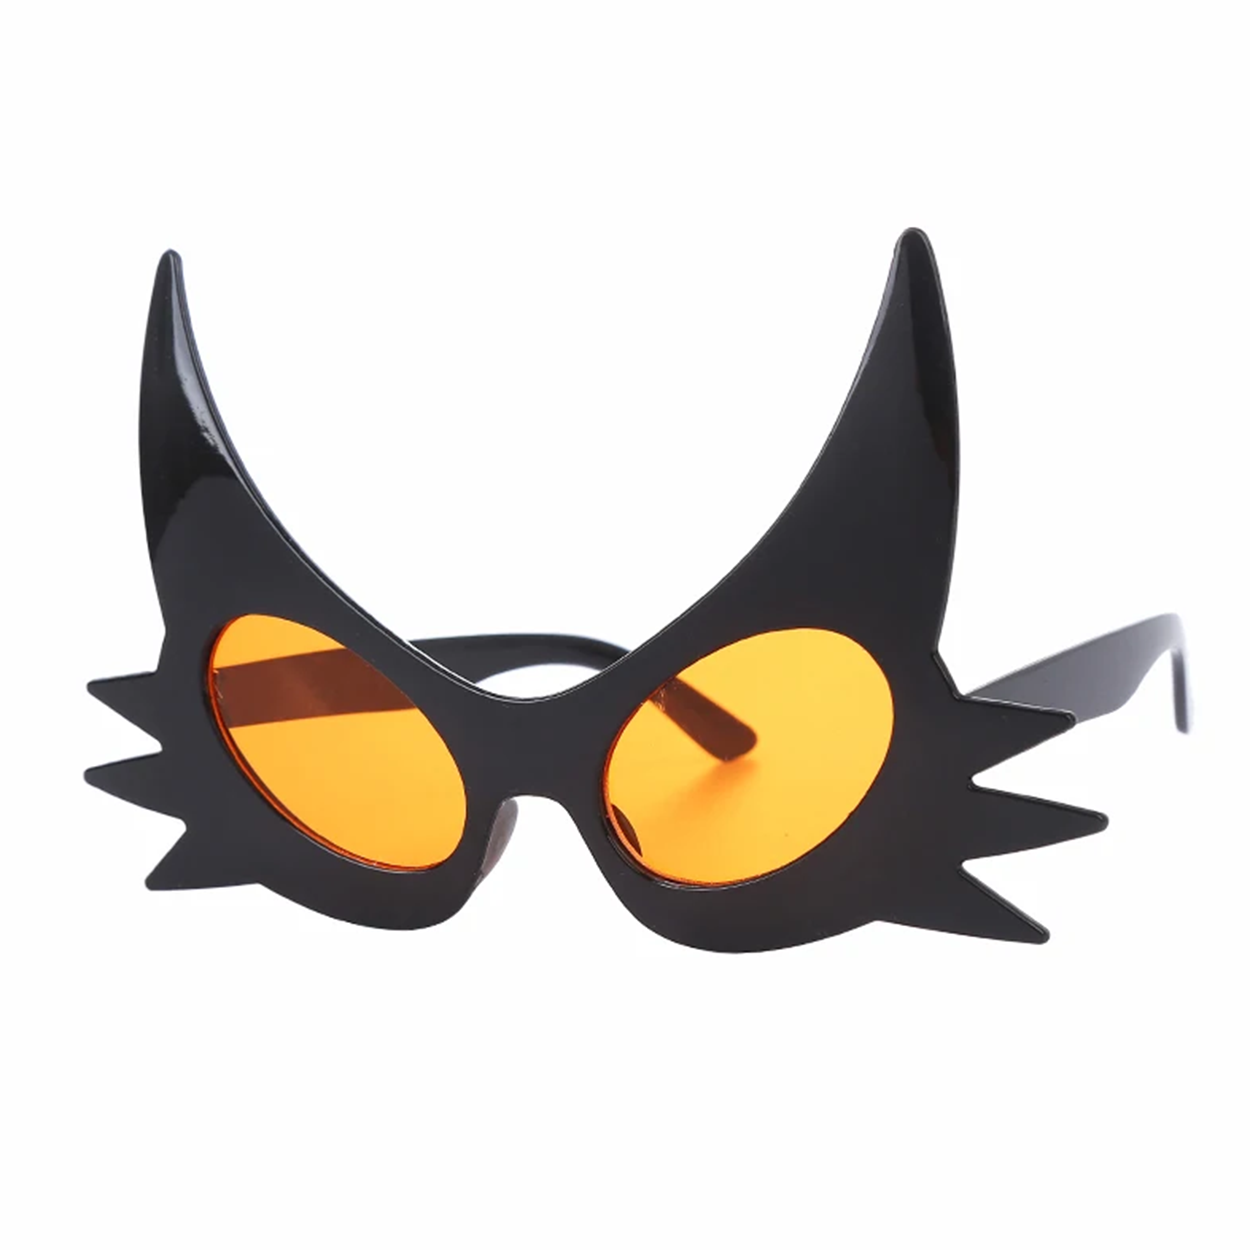 Siyah Renk Bıyık Tasarımlı Kedi Gözlüğü 19x11 cm (Lisinya)